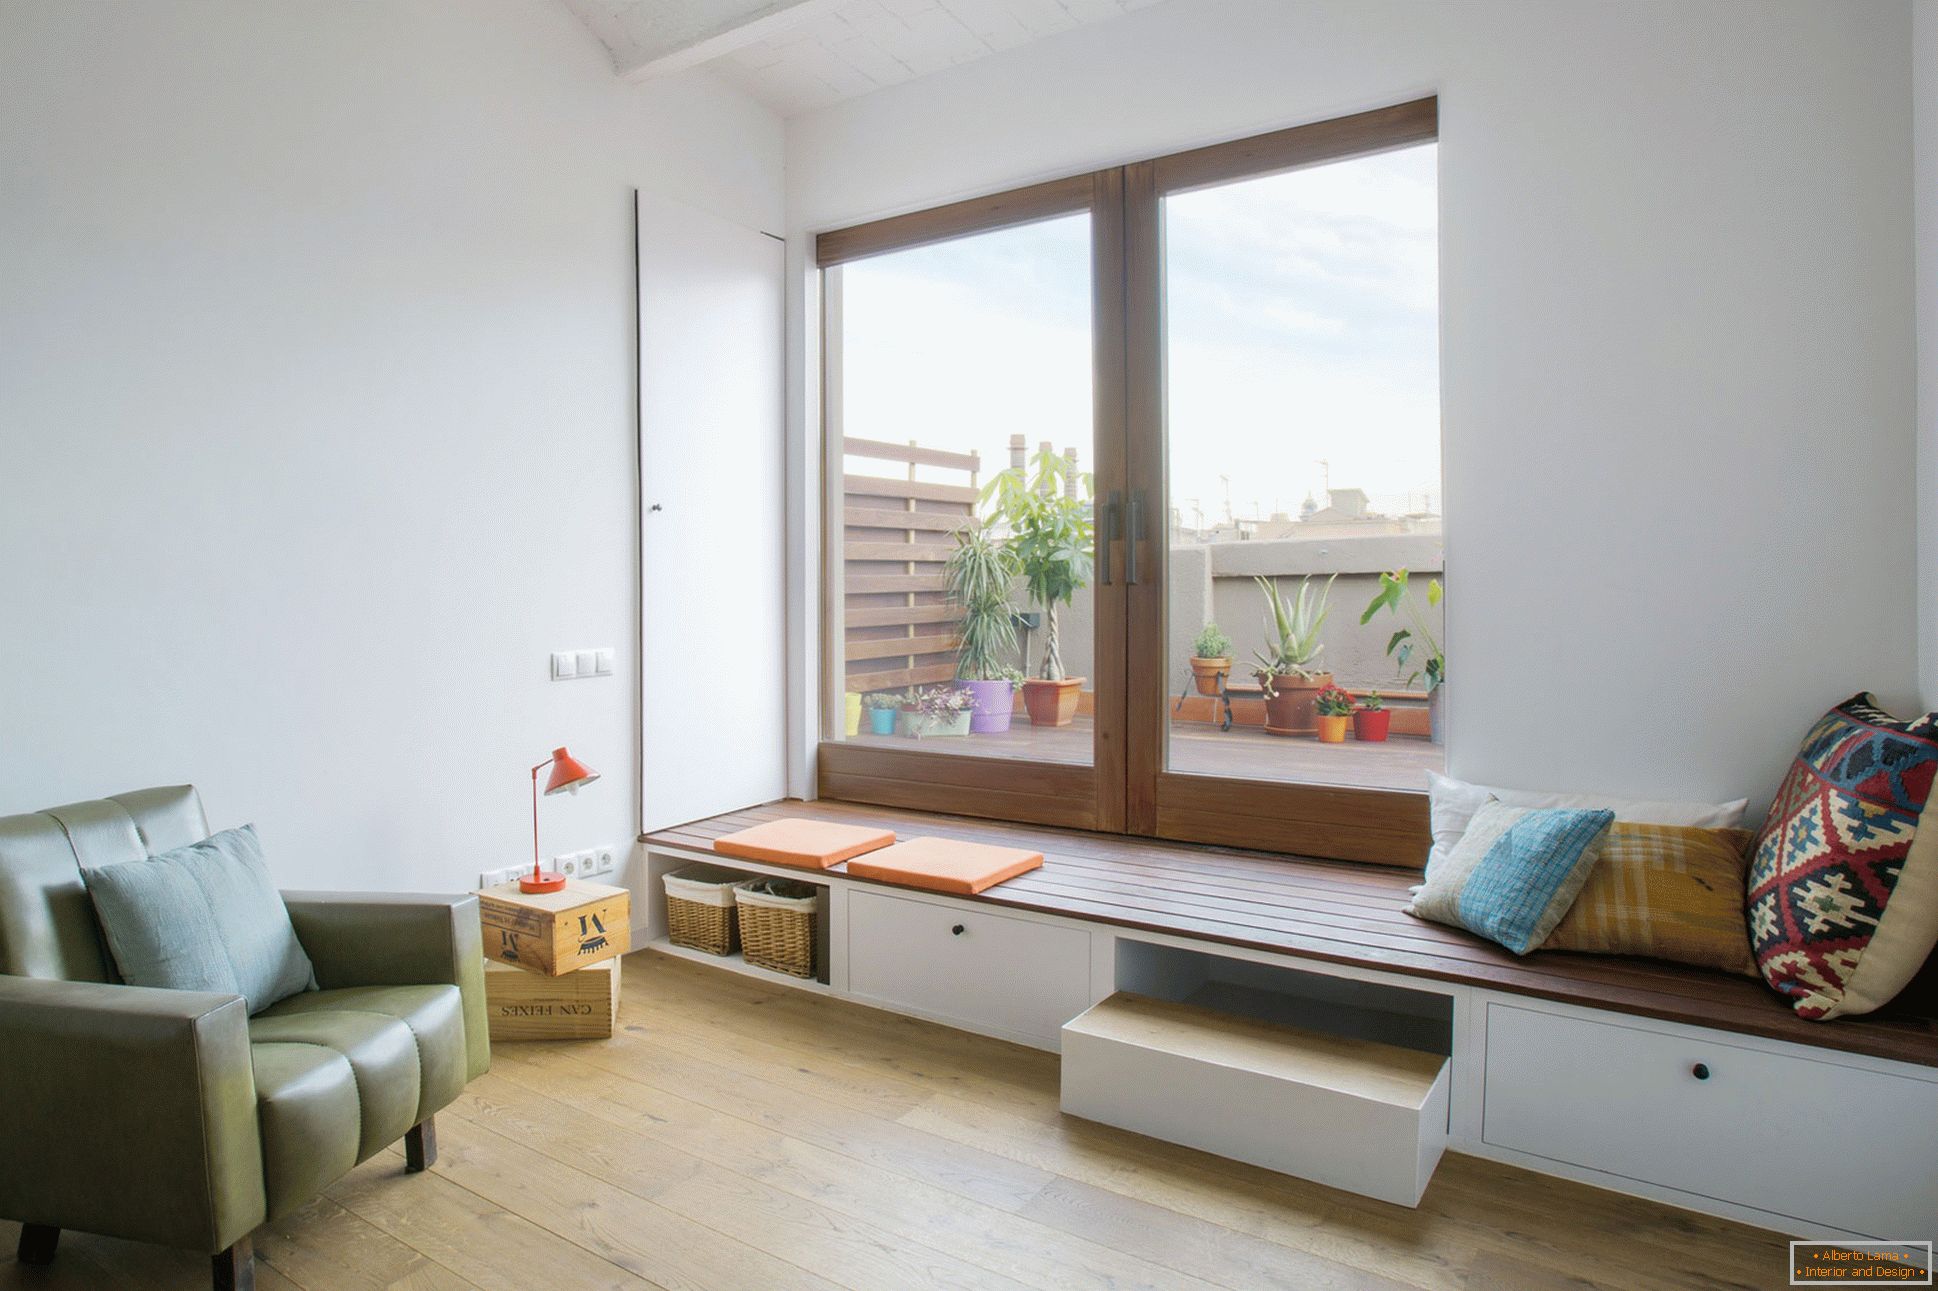 Interior design of a small apartment in Barcelona